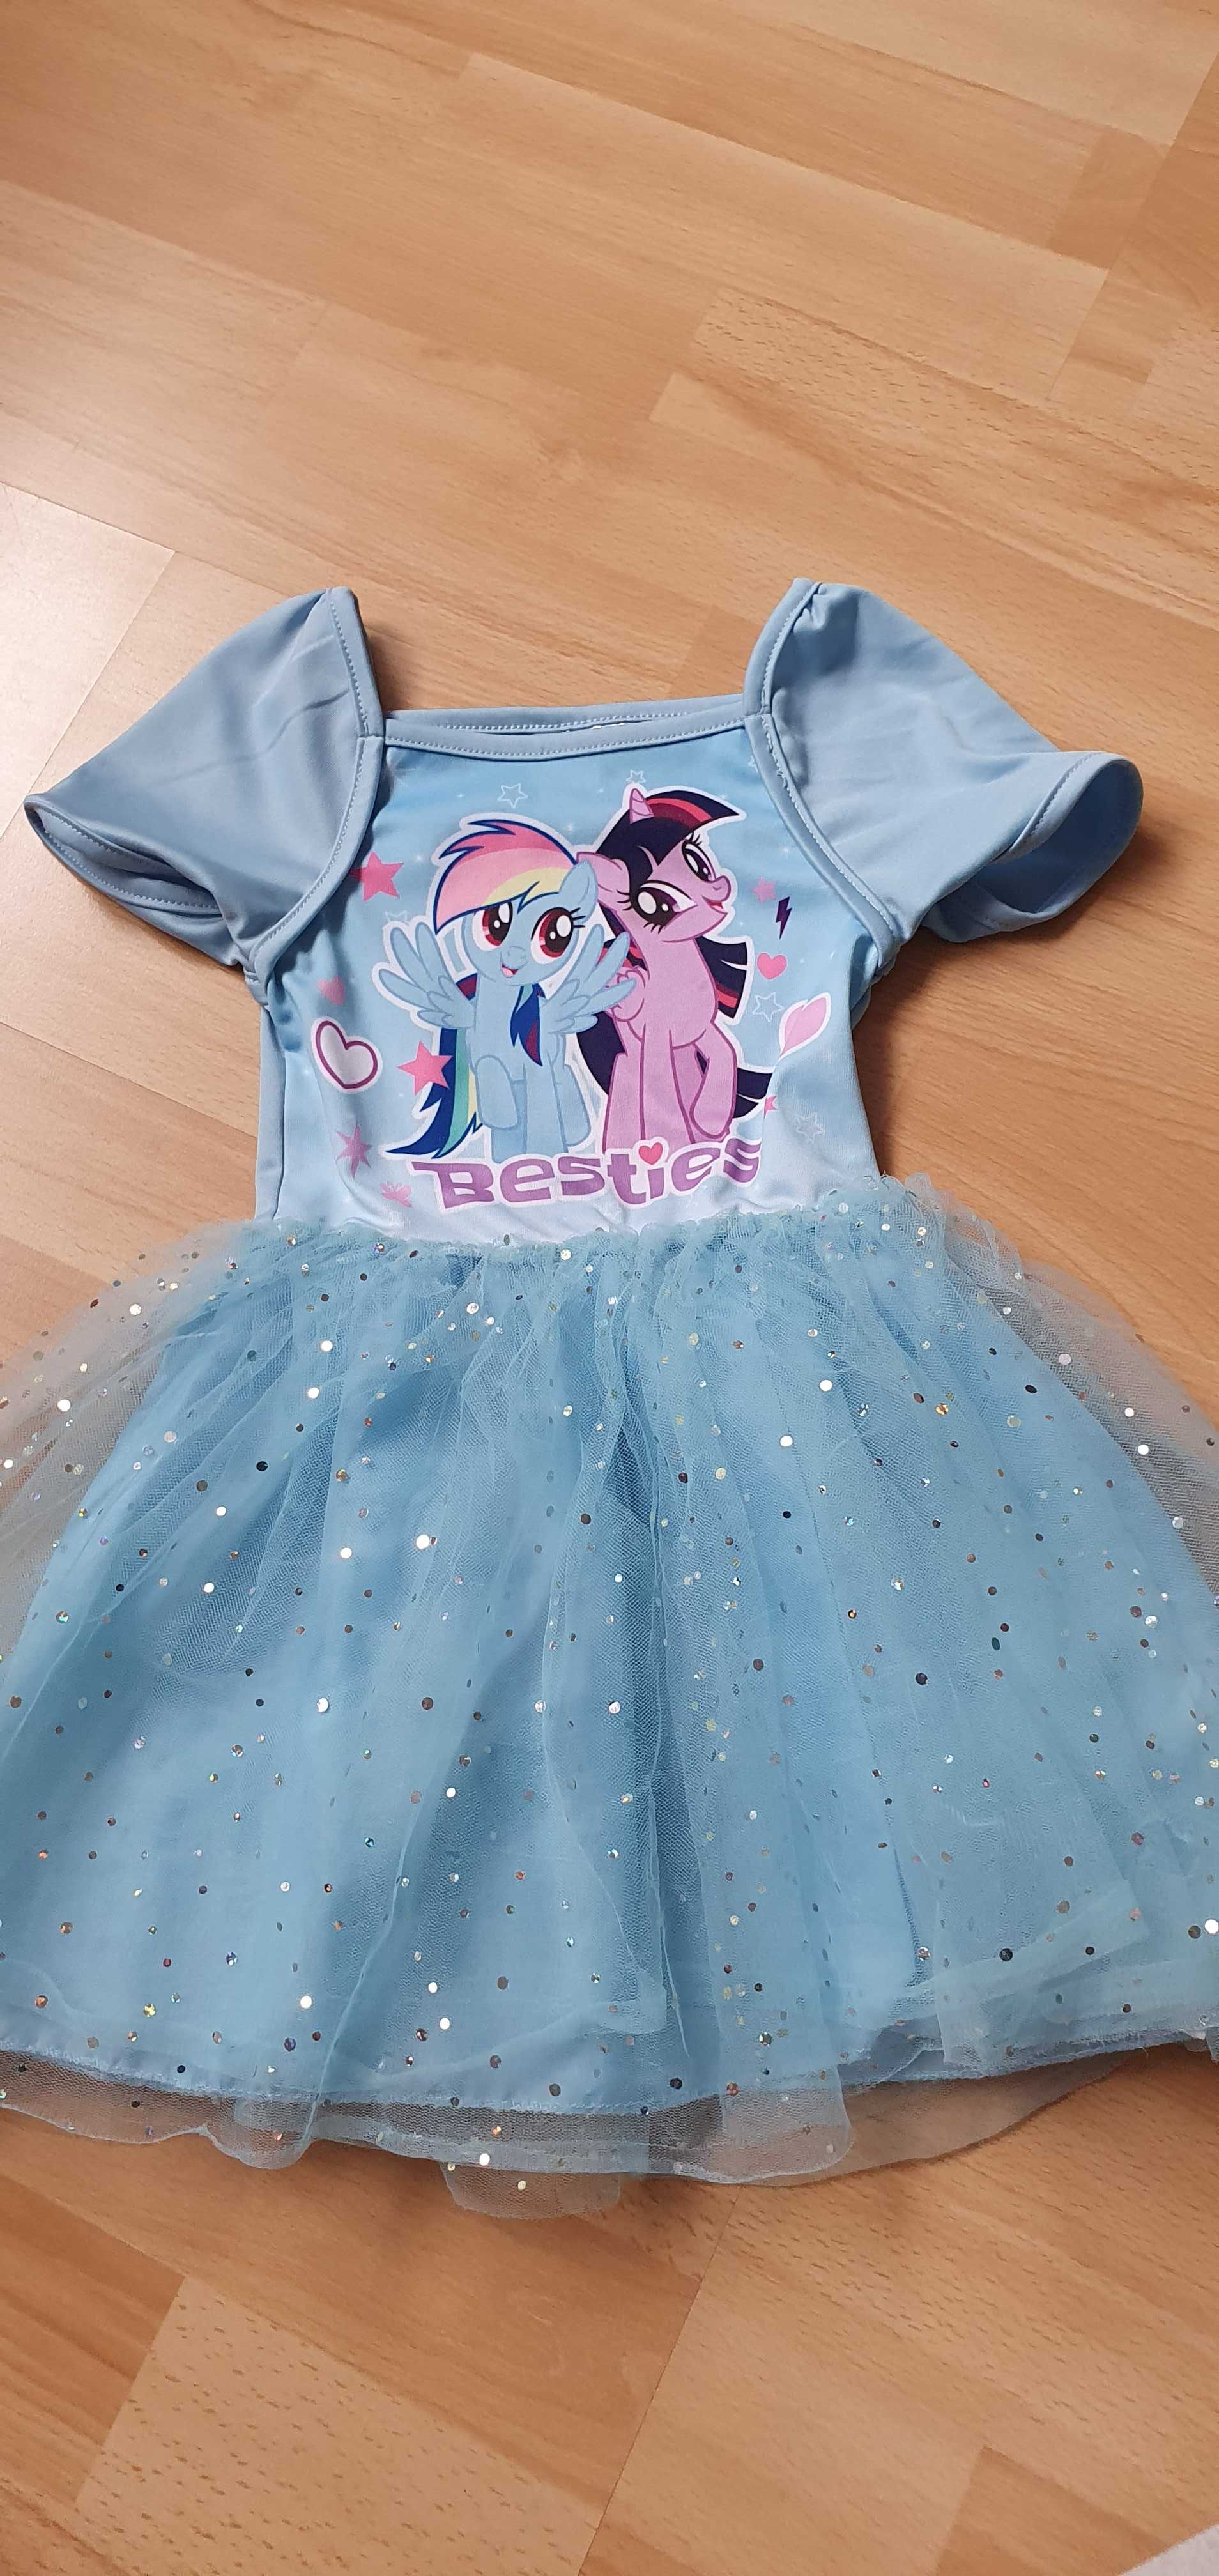 Śliczna sukienka tiul My Little Pony firmy Disney rozmiar 98-104cm